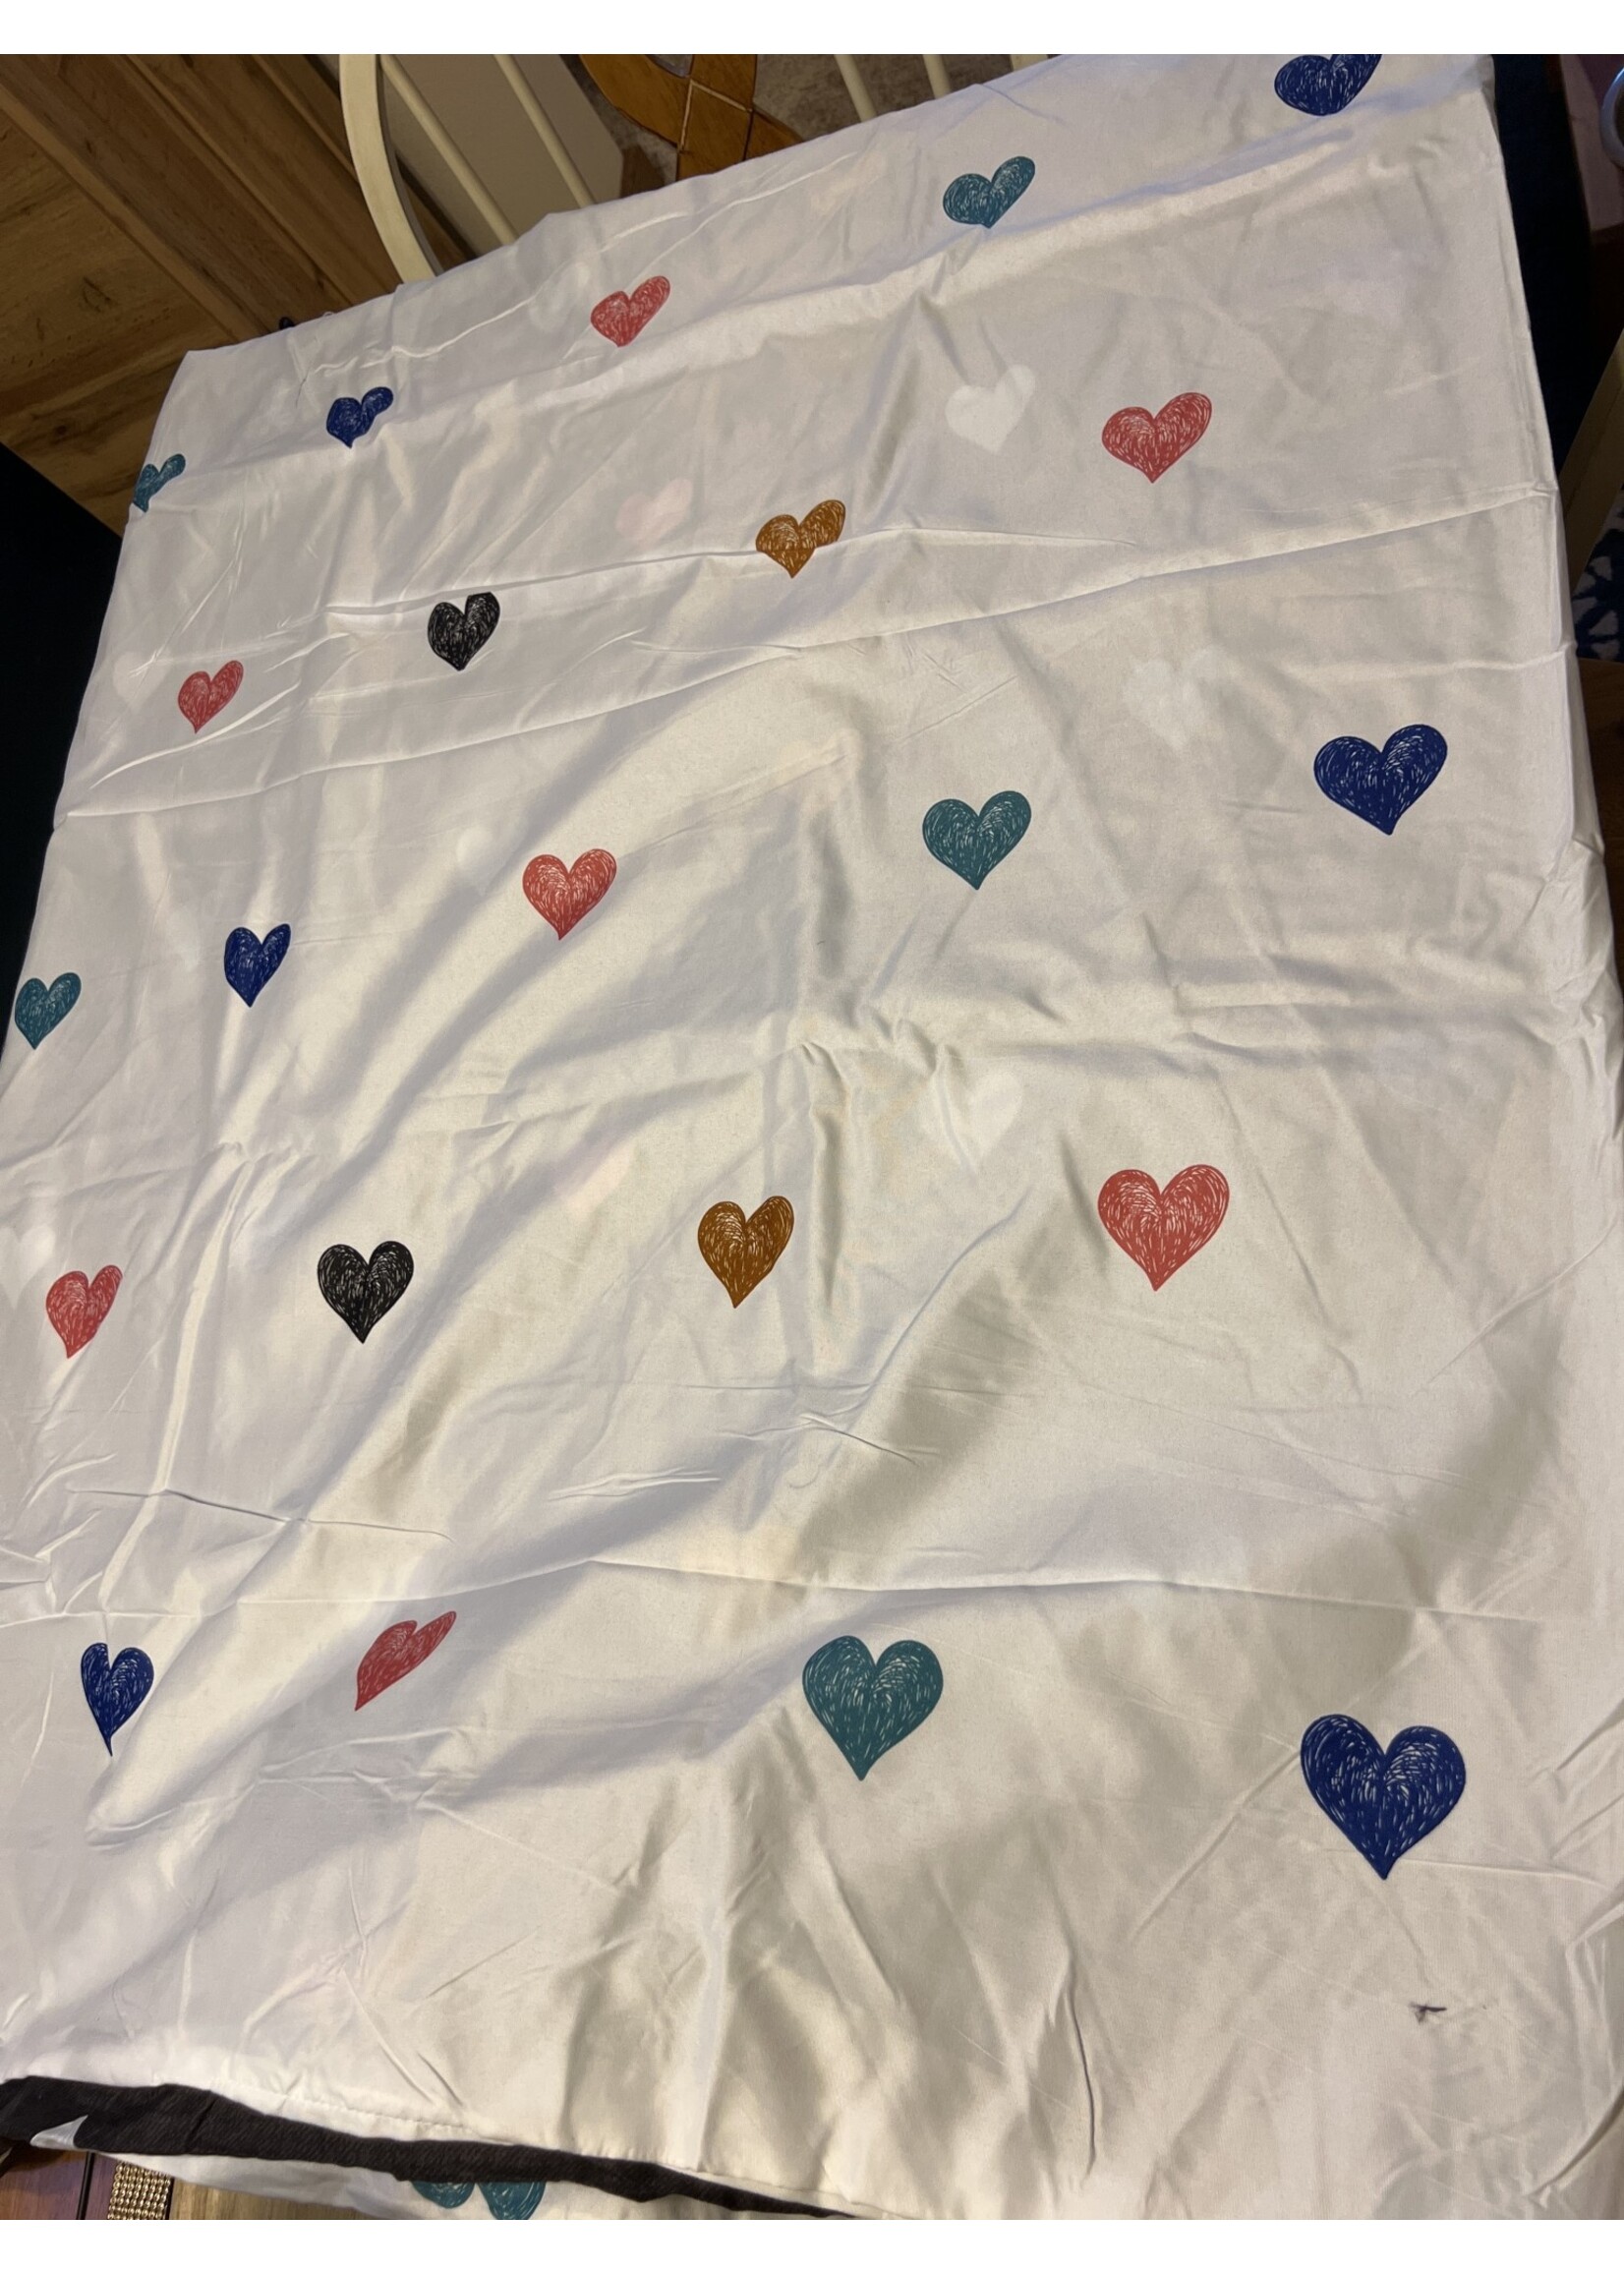 Queen Girls Love Flat Sheet and 2 pillow cases 88”x78” reversible